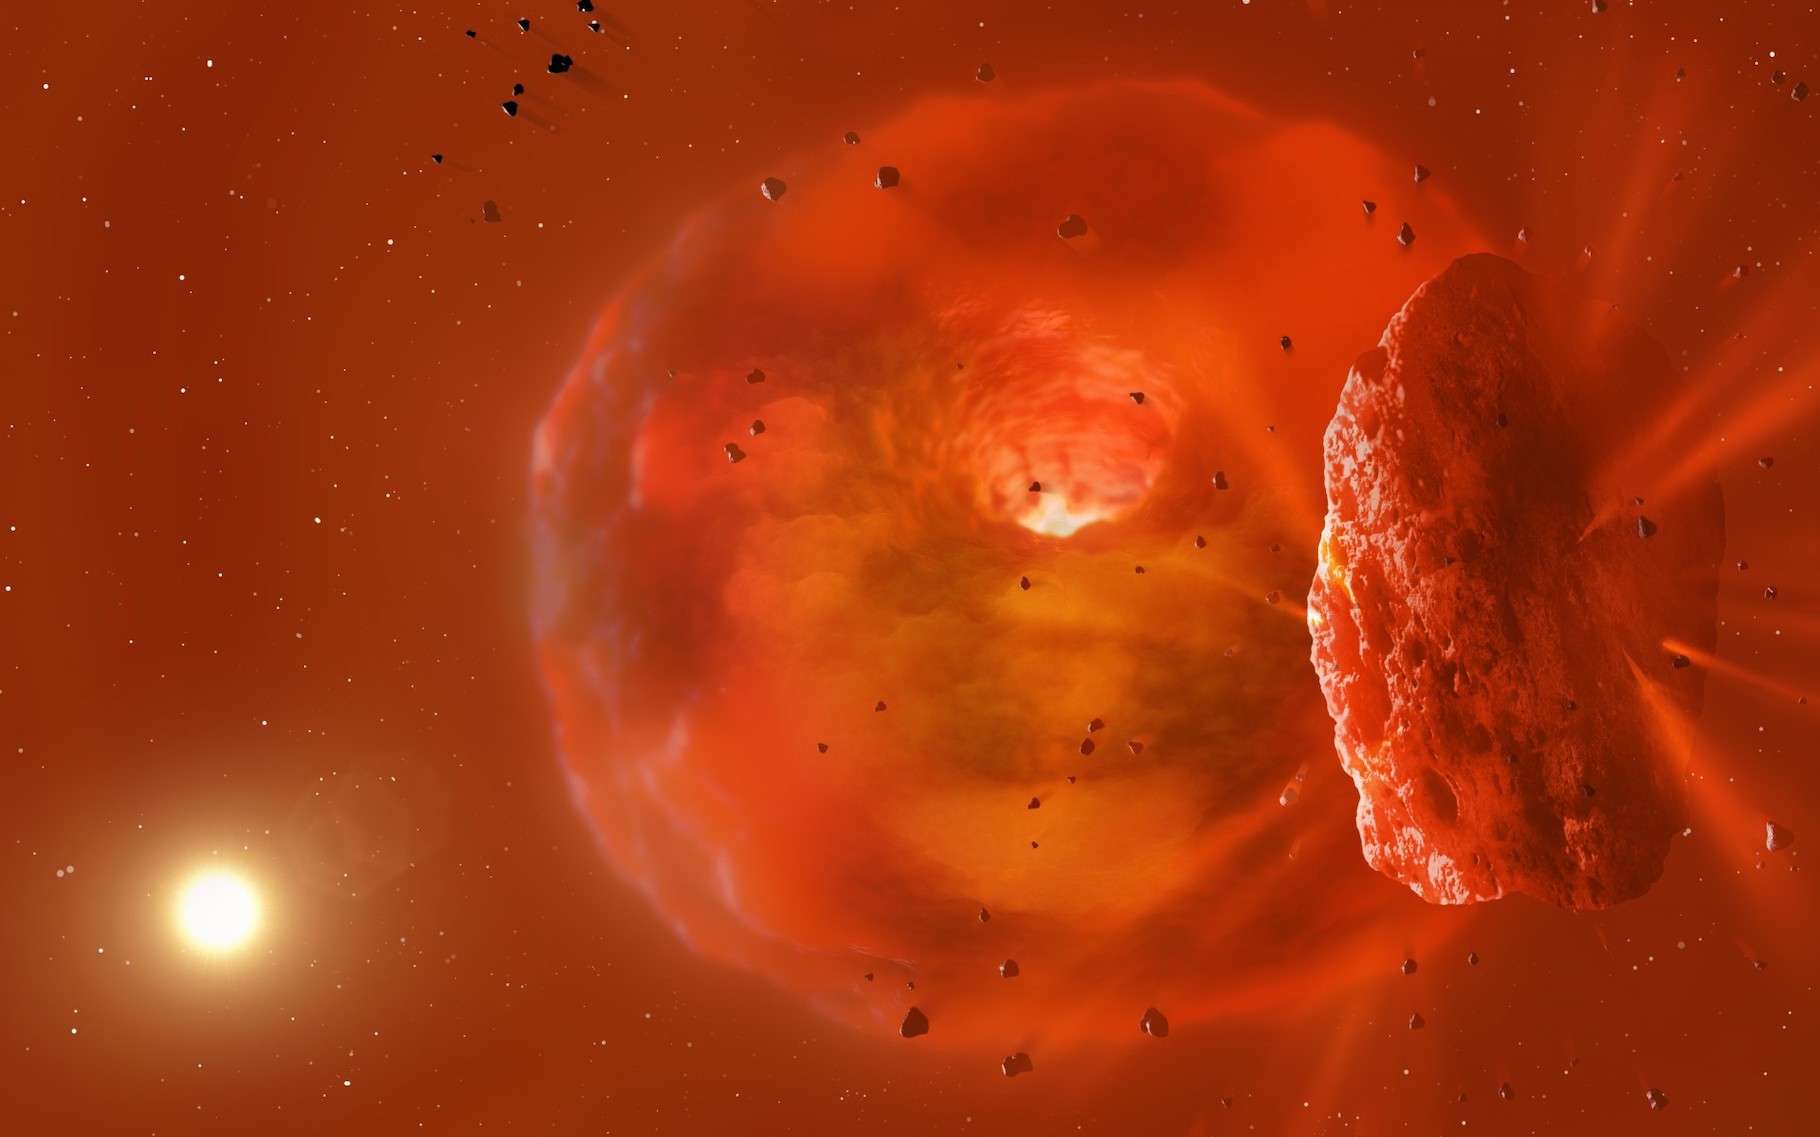 Des astronomes ont observé la collision frontale de deux planètes et ce qu'il en reste